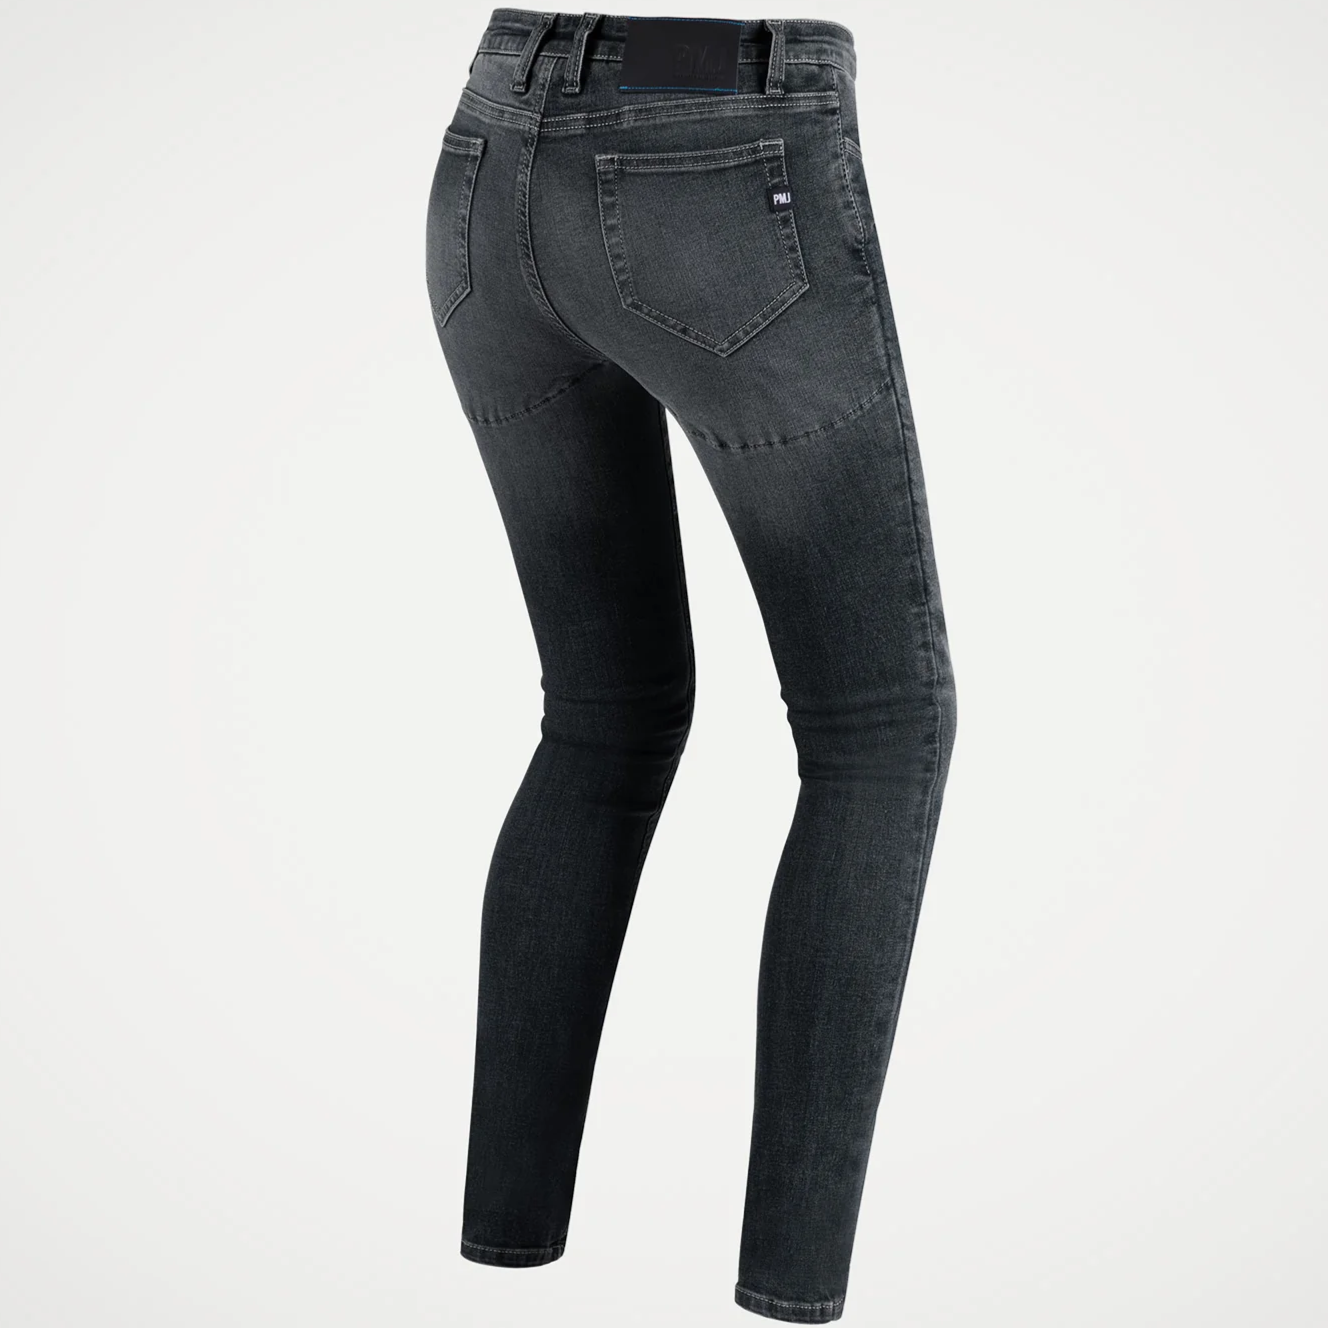 Jeans Moto Pmj Twaron Modello Skinny Donna Nero Omologato CE A